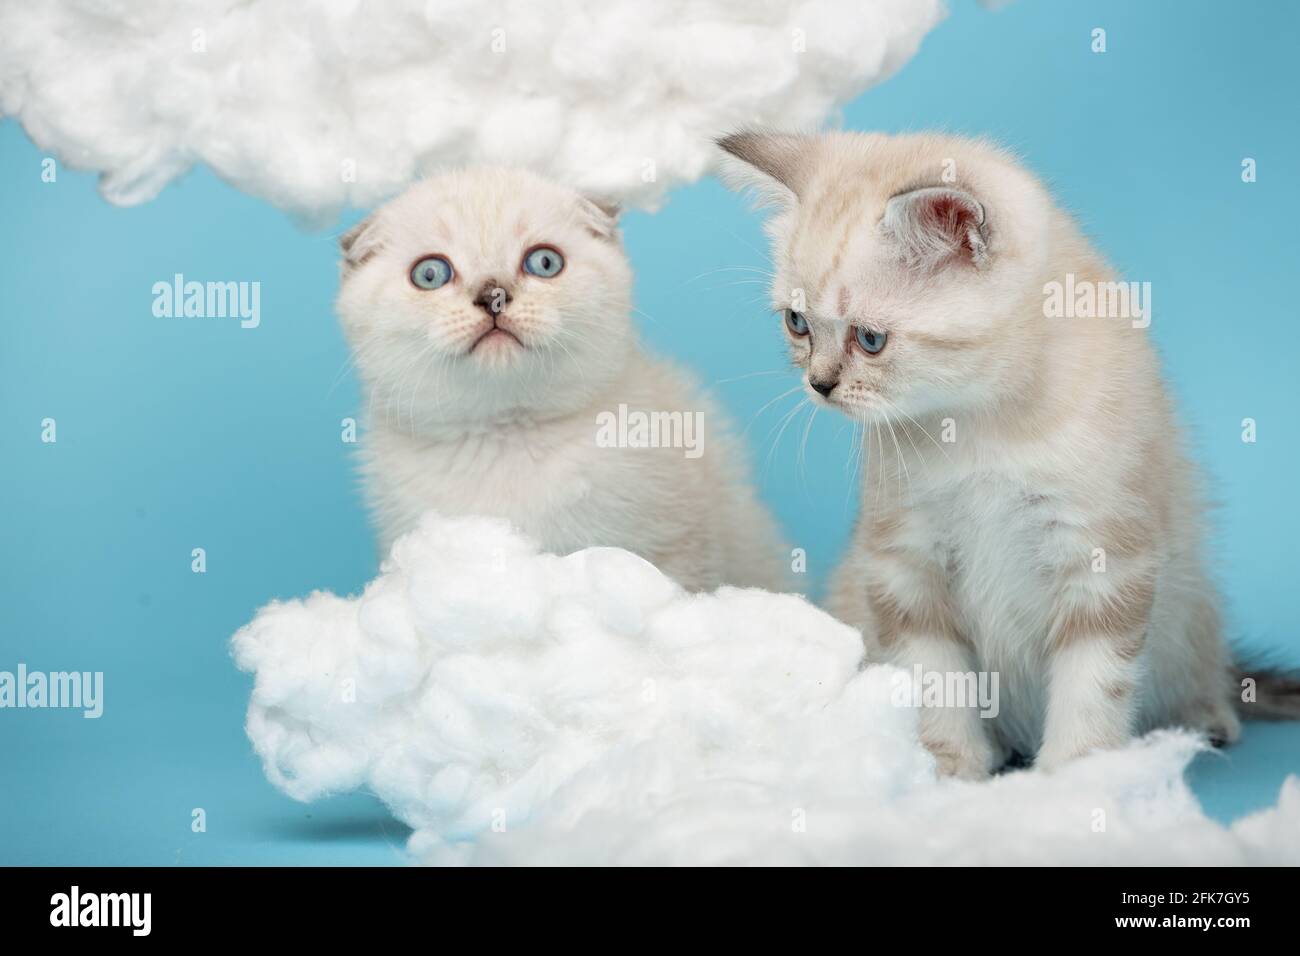 Nahaufnahme von schottischen Kätzchen in cremefarbener Farbe mit blauen Augen mit großem Interesse, wenn man Baumwollwolken auf blauem Hintergrund betrachtet. Haustiere, Tiere und Katzen c Stockfoto